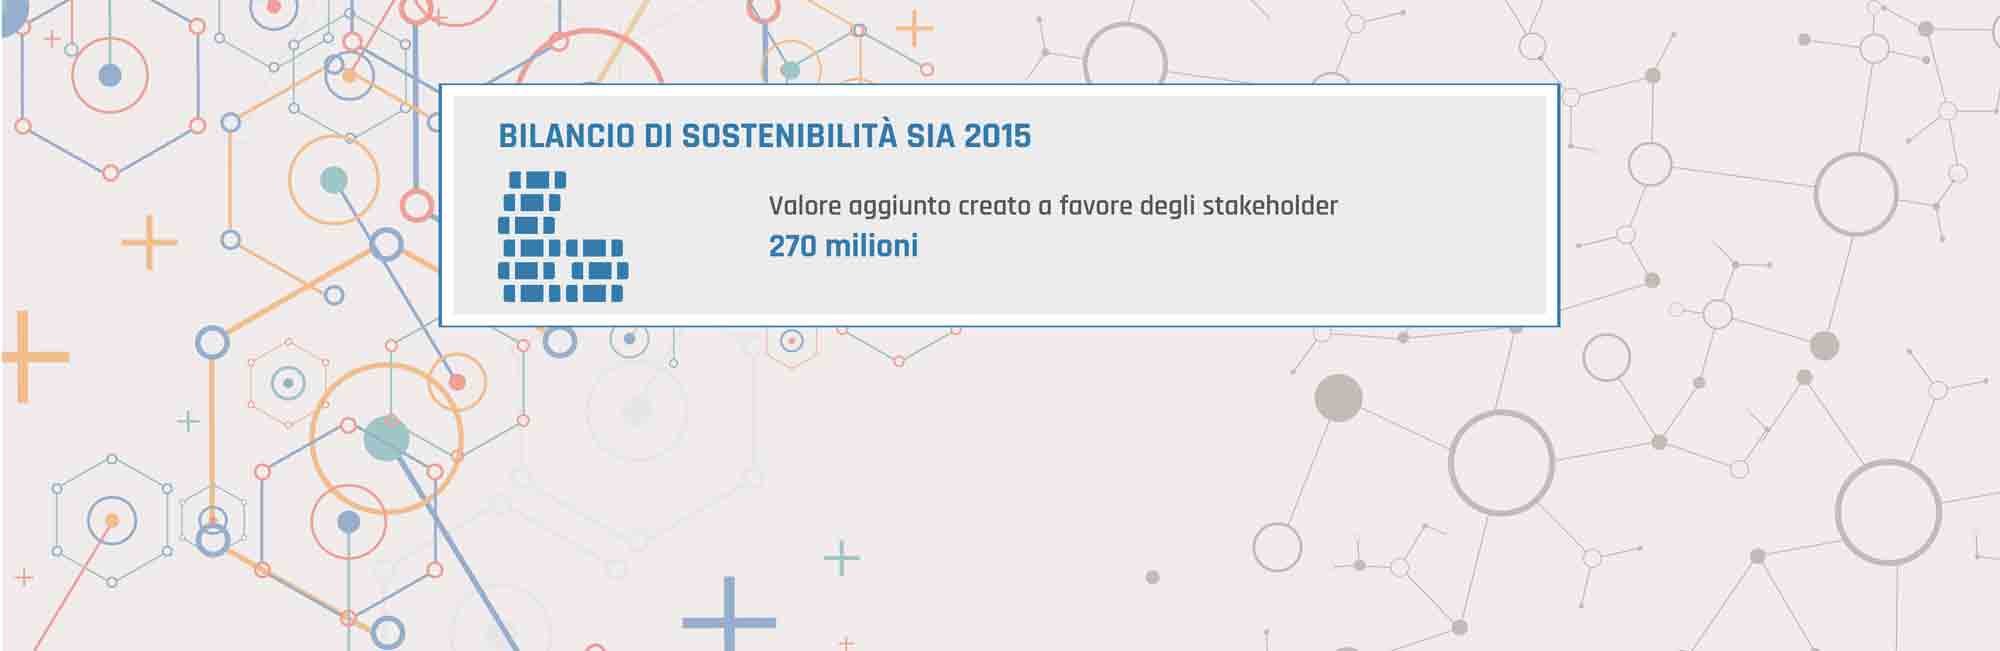 Briefing milano web graphic key figures SIA bilancio sostenibilità 2015-2